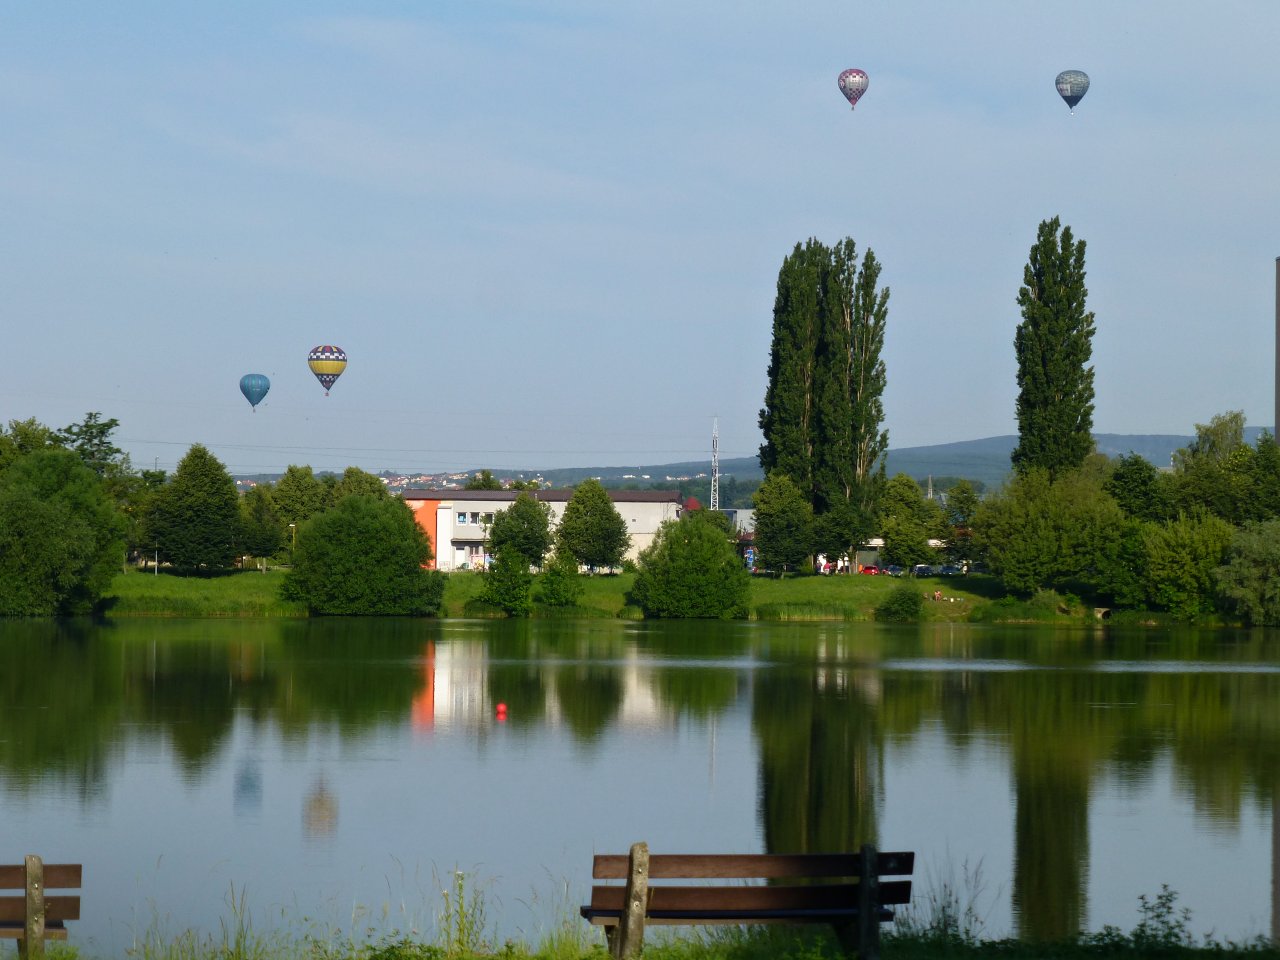 Balloon Fiesta 2016 in Kosice, Slovakia – 1